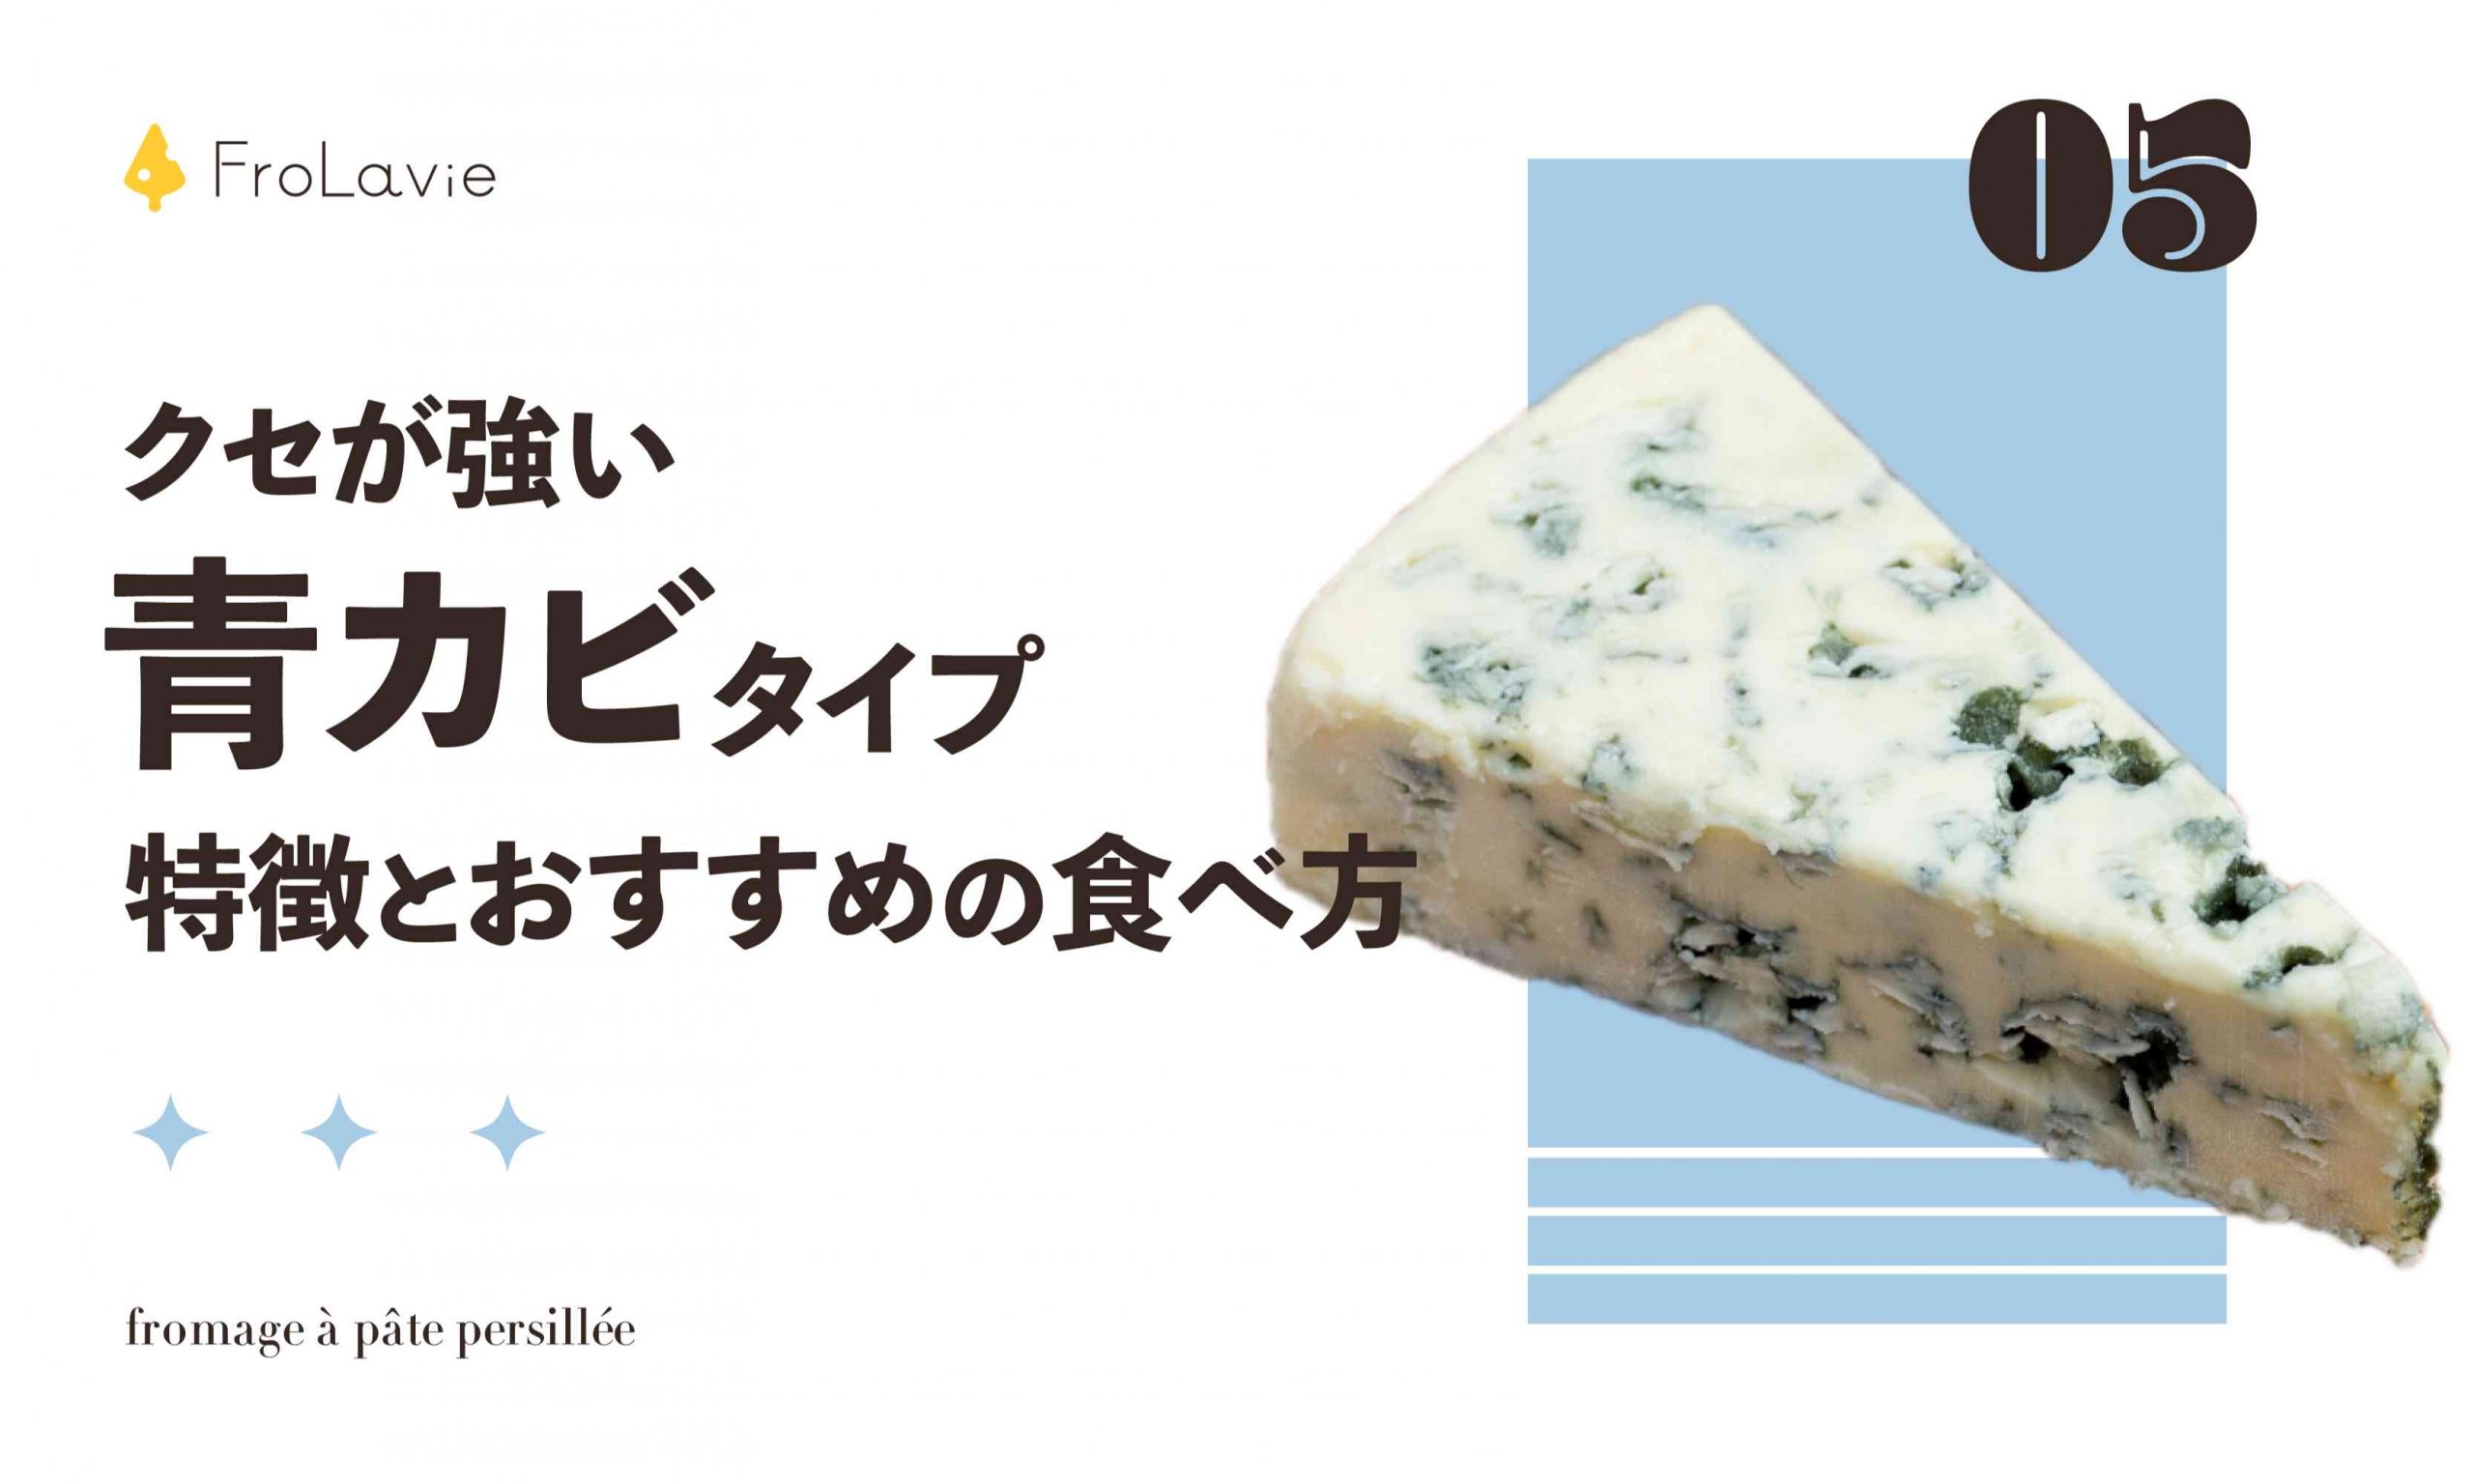 クセが強い 青カビタイプの特徴と おすすめの食べ方 ブルーチーズ Frolavie フローラビ チーズのある豊かな生活を